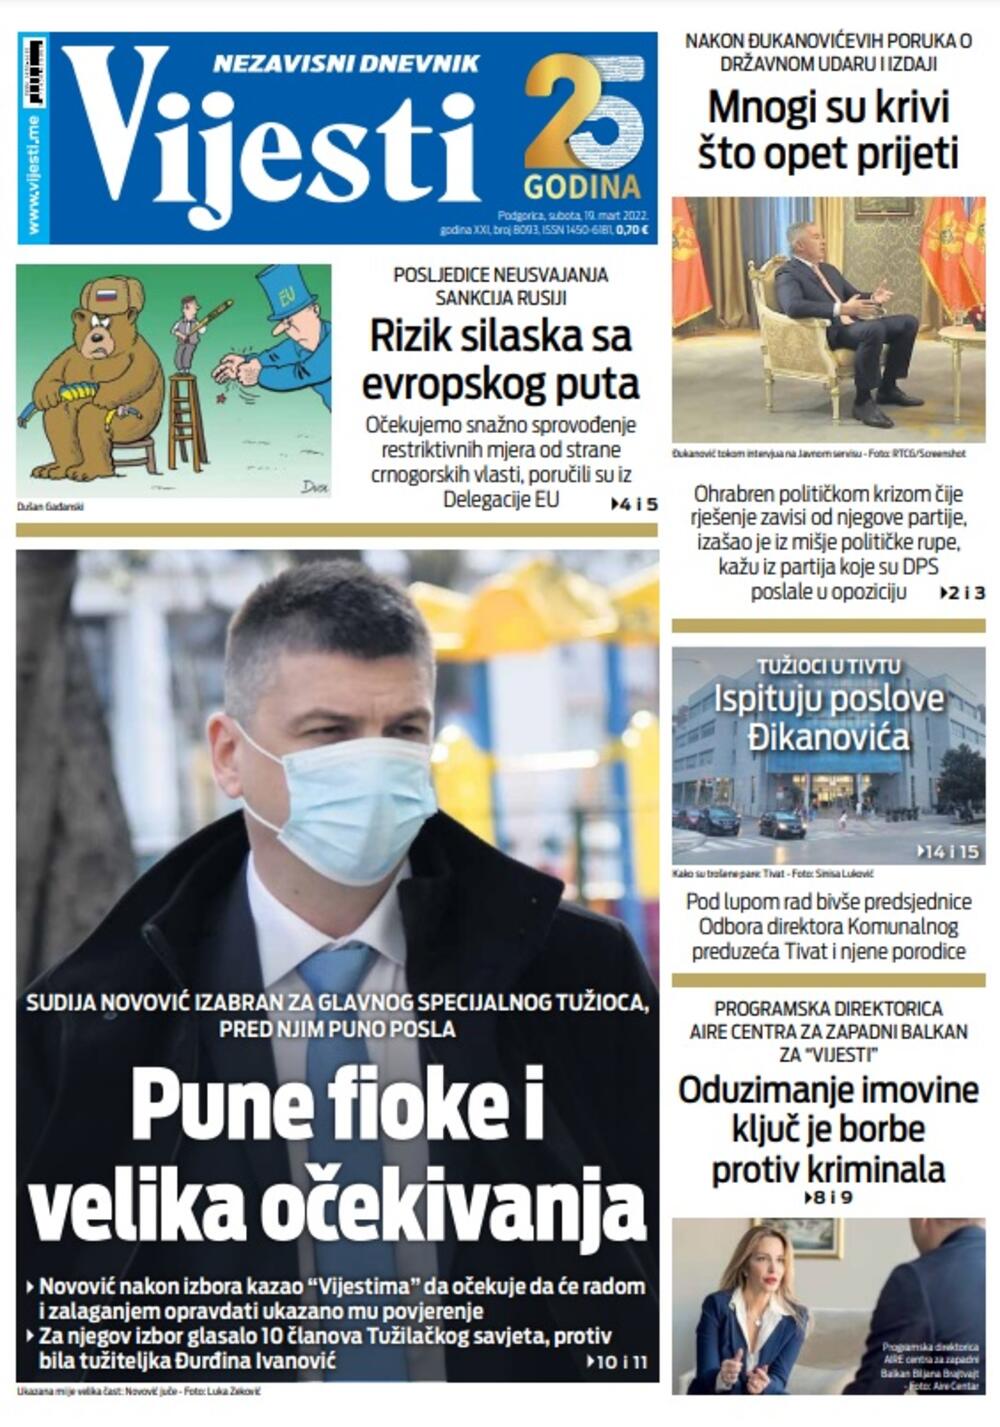 Naslovna strana "Vijesti" za 19. mart 2022., Foto: Vijesti